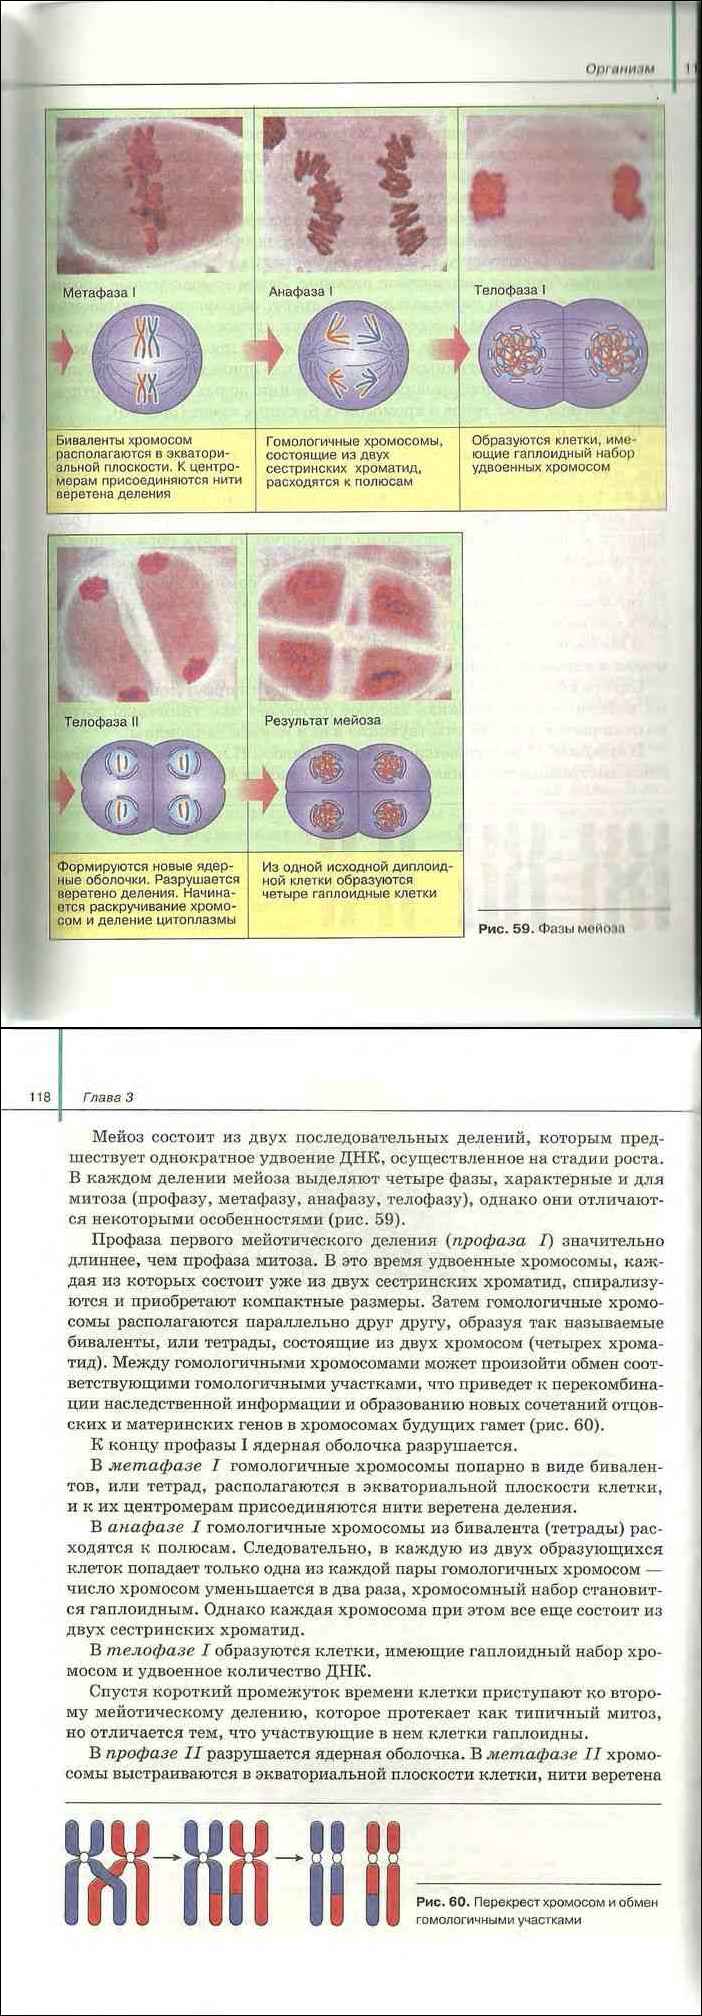 Биология 11 класс учебник сивоглазов агафонова